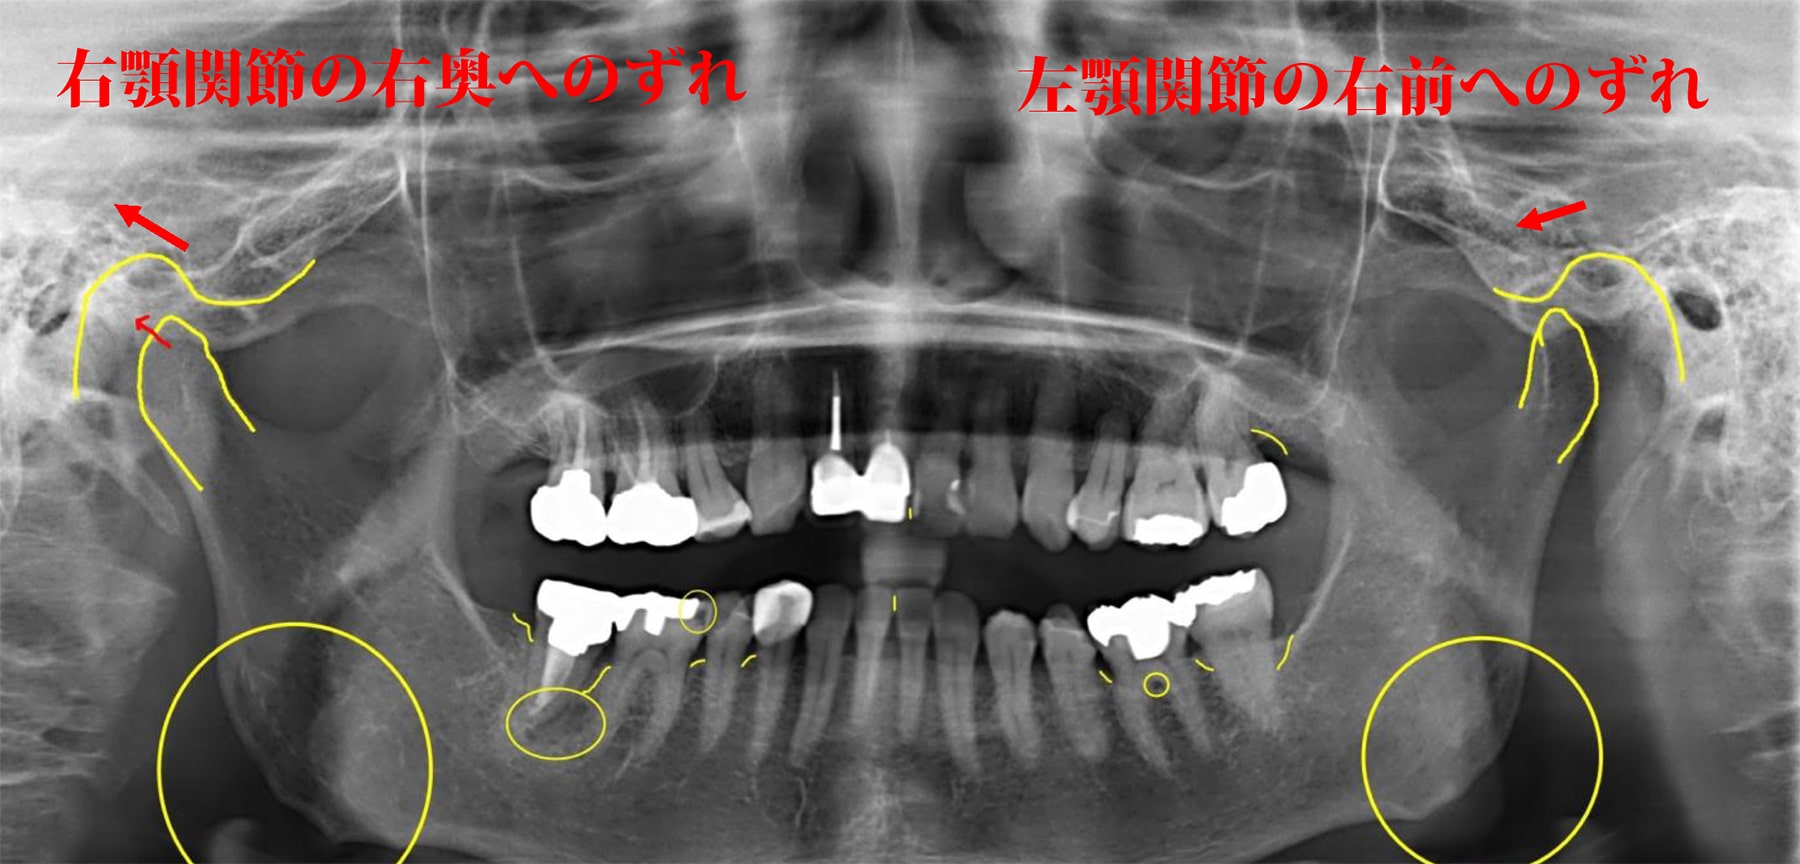 歯列・歯並びの問題